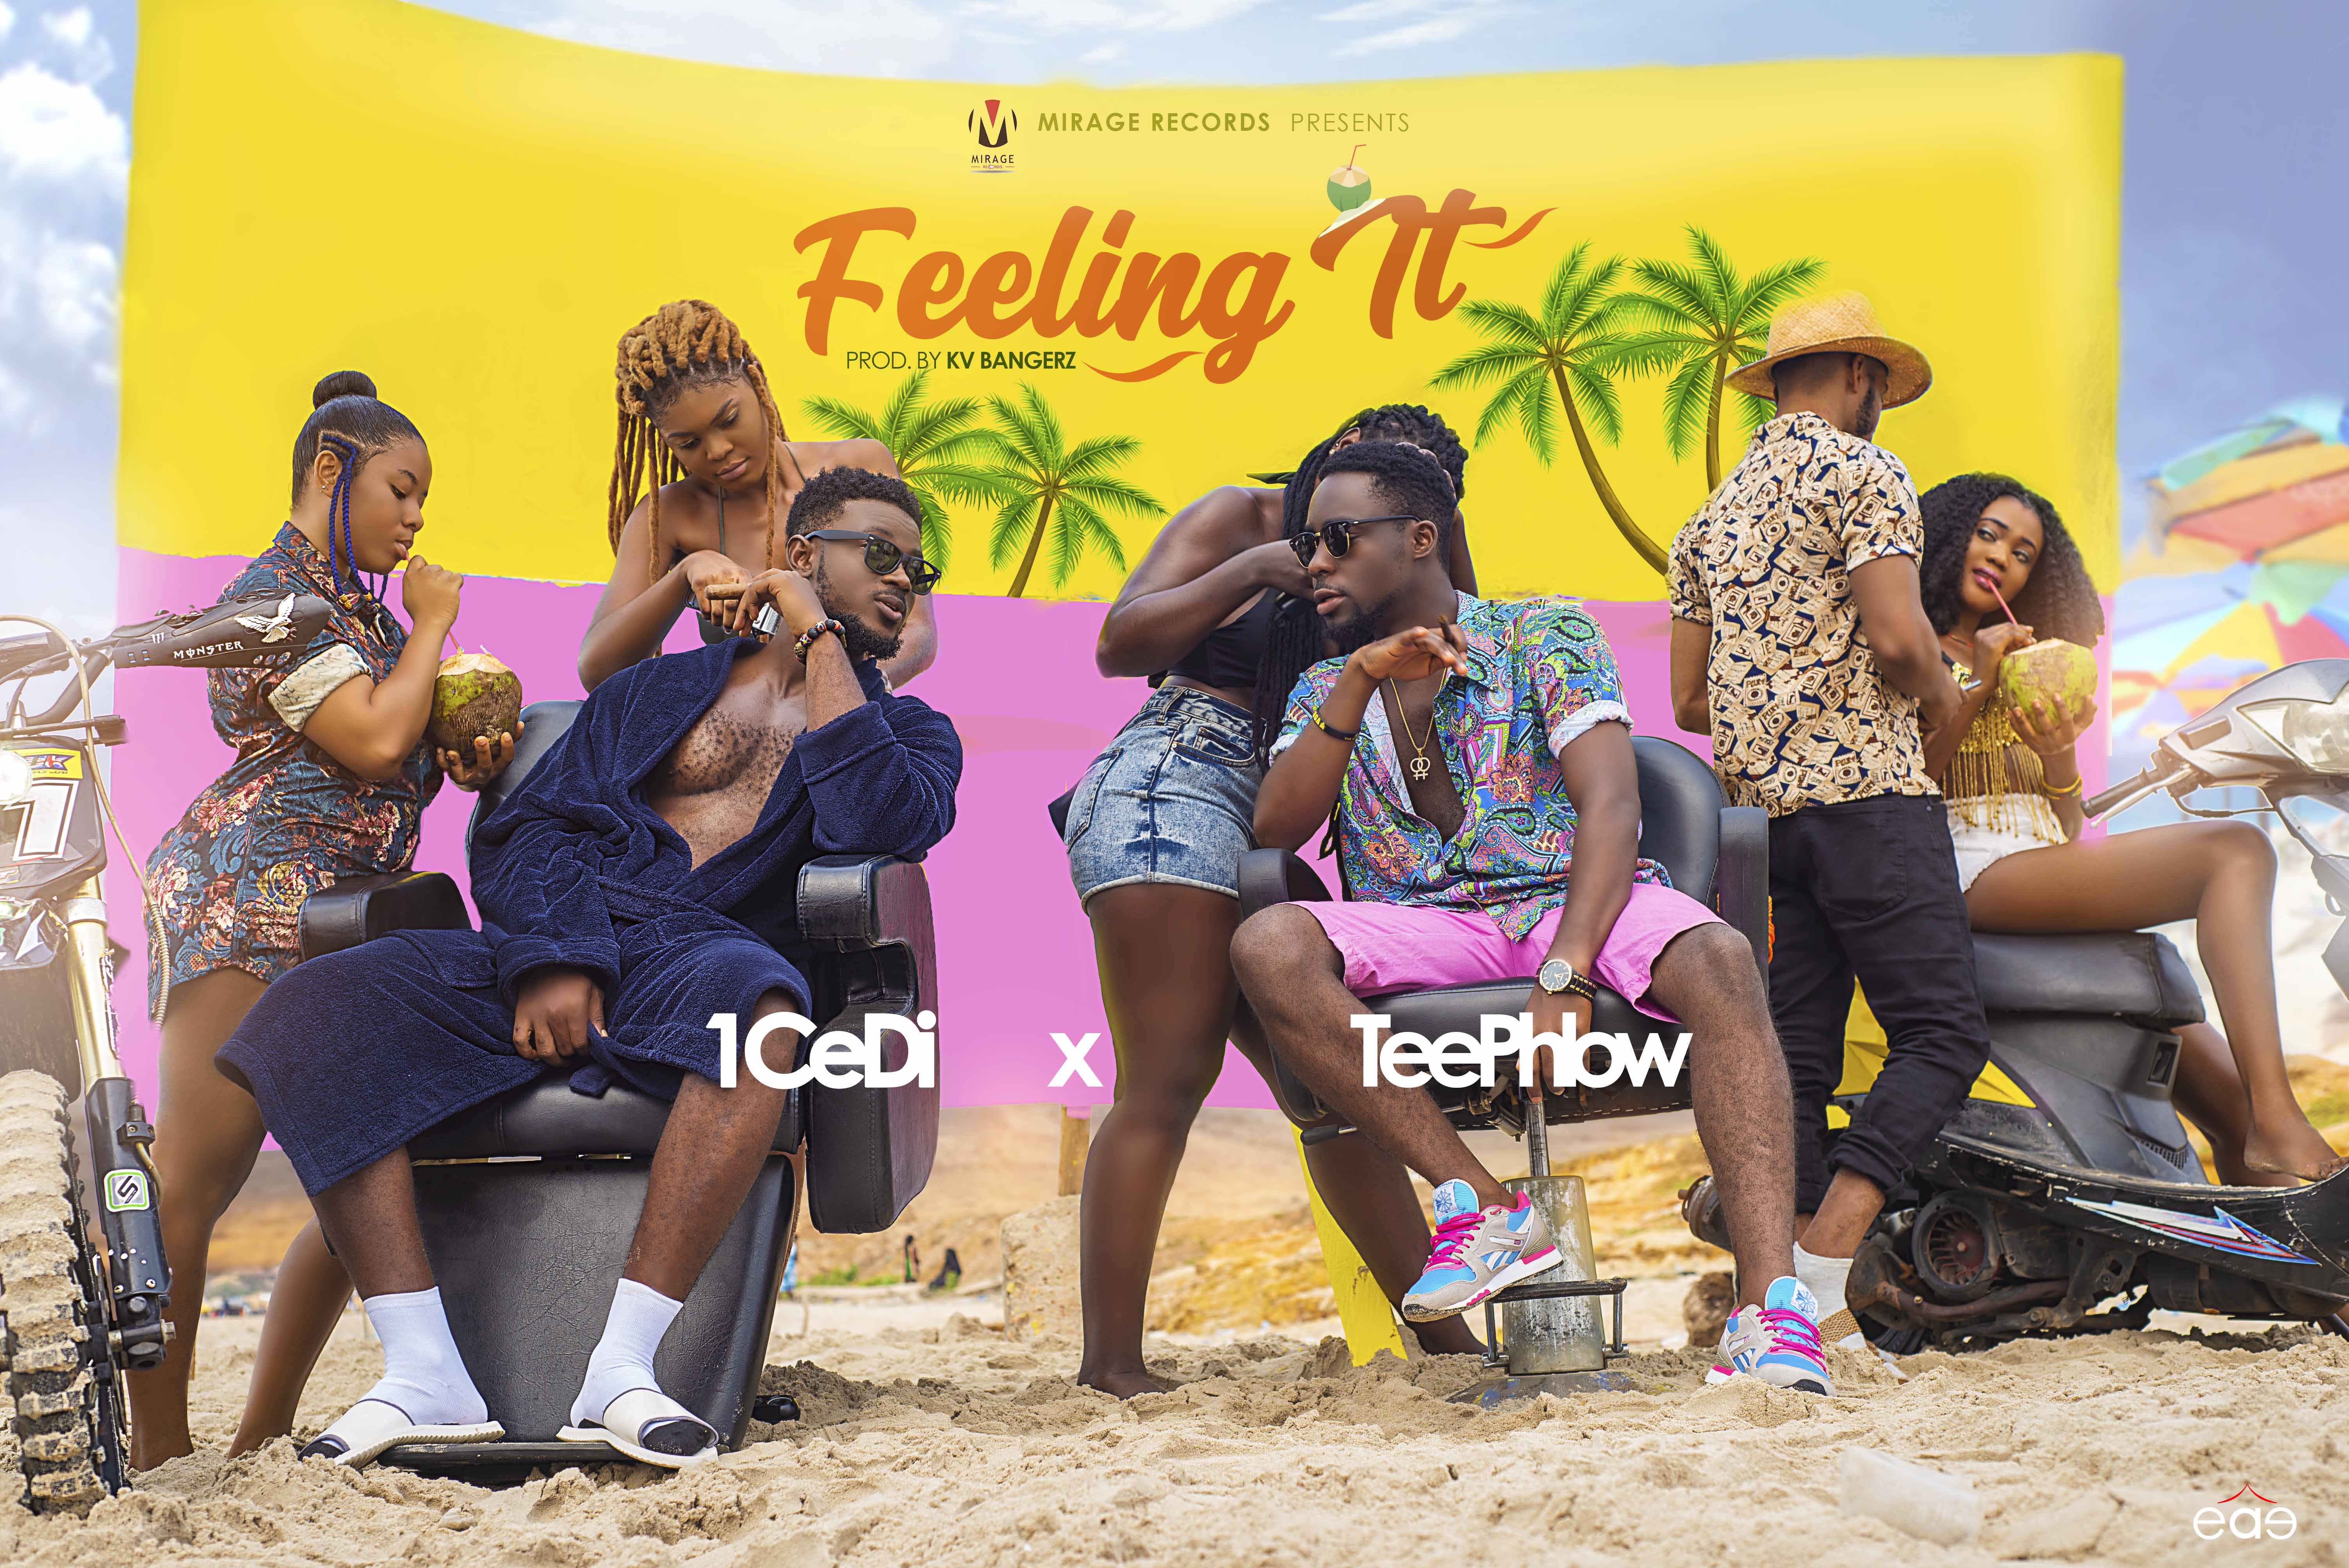 1CeDi – Feeling it (Feat Teephlow)